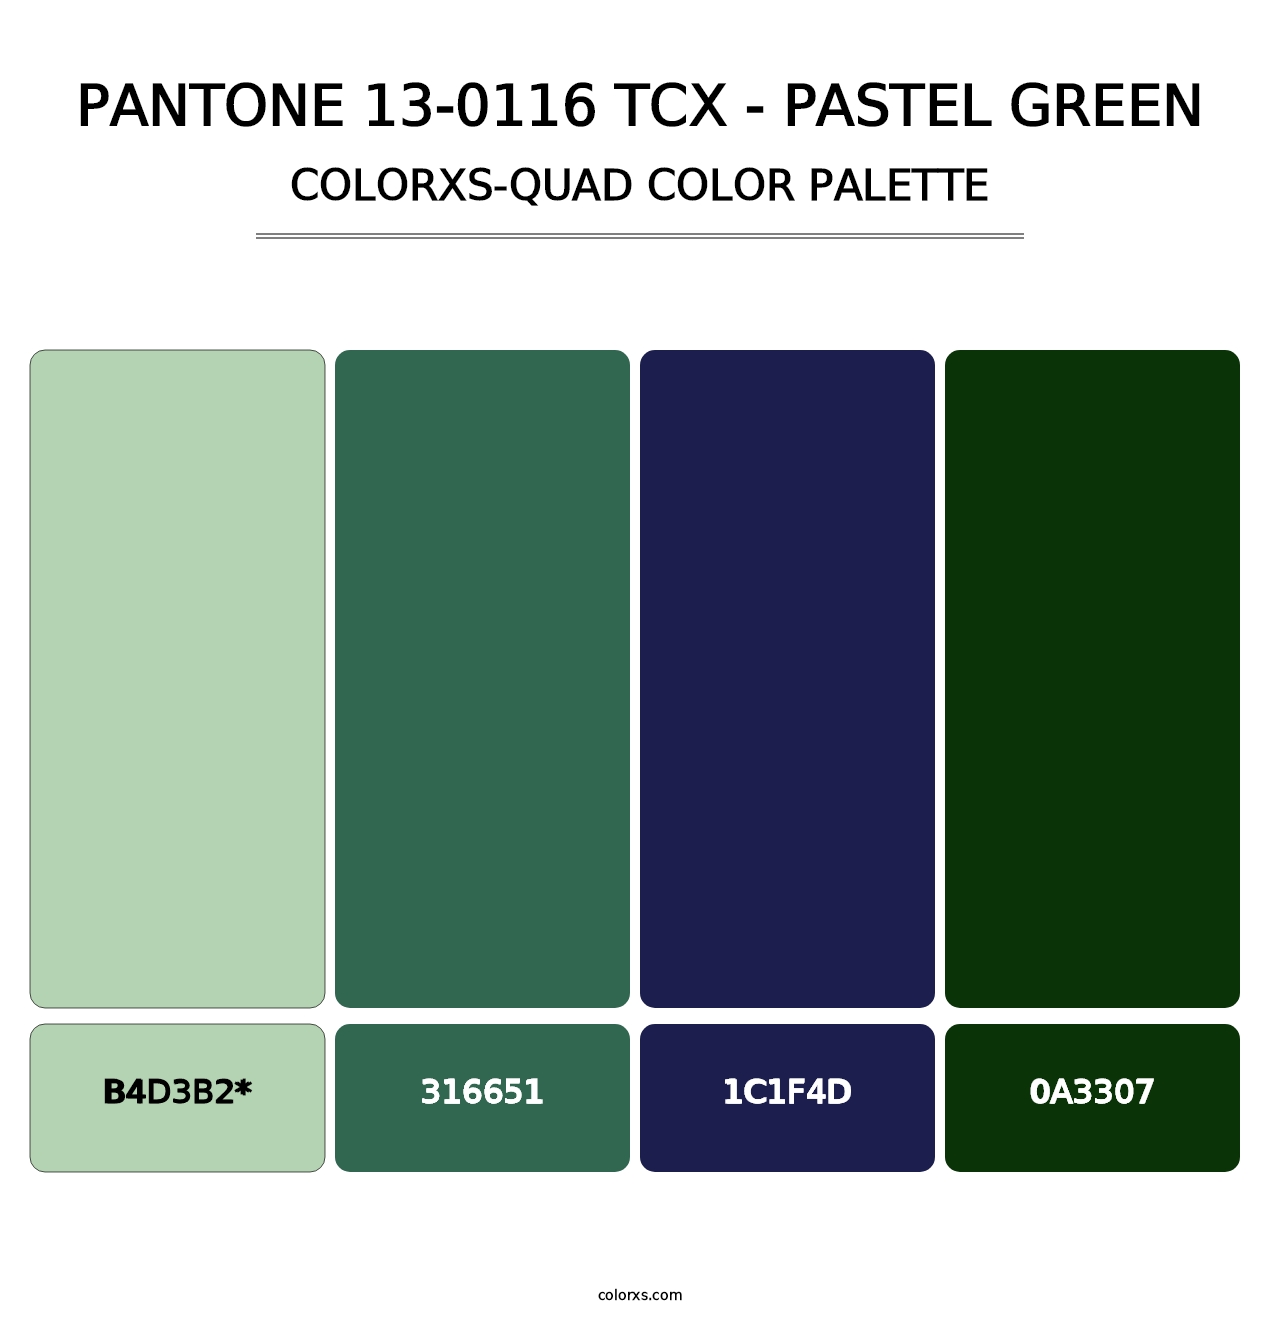 PANTONE 13-0116 TCX - Pastel Green - Colorxs Quad Palette